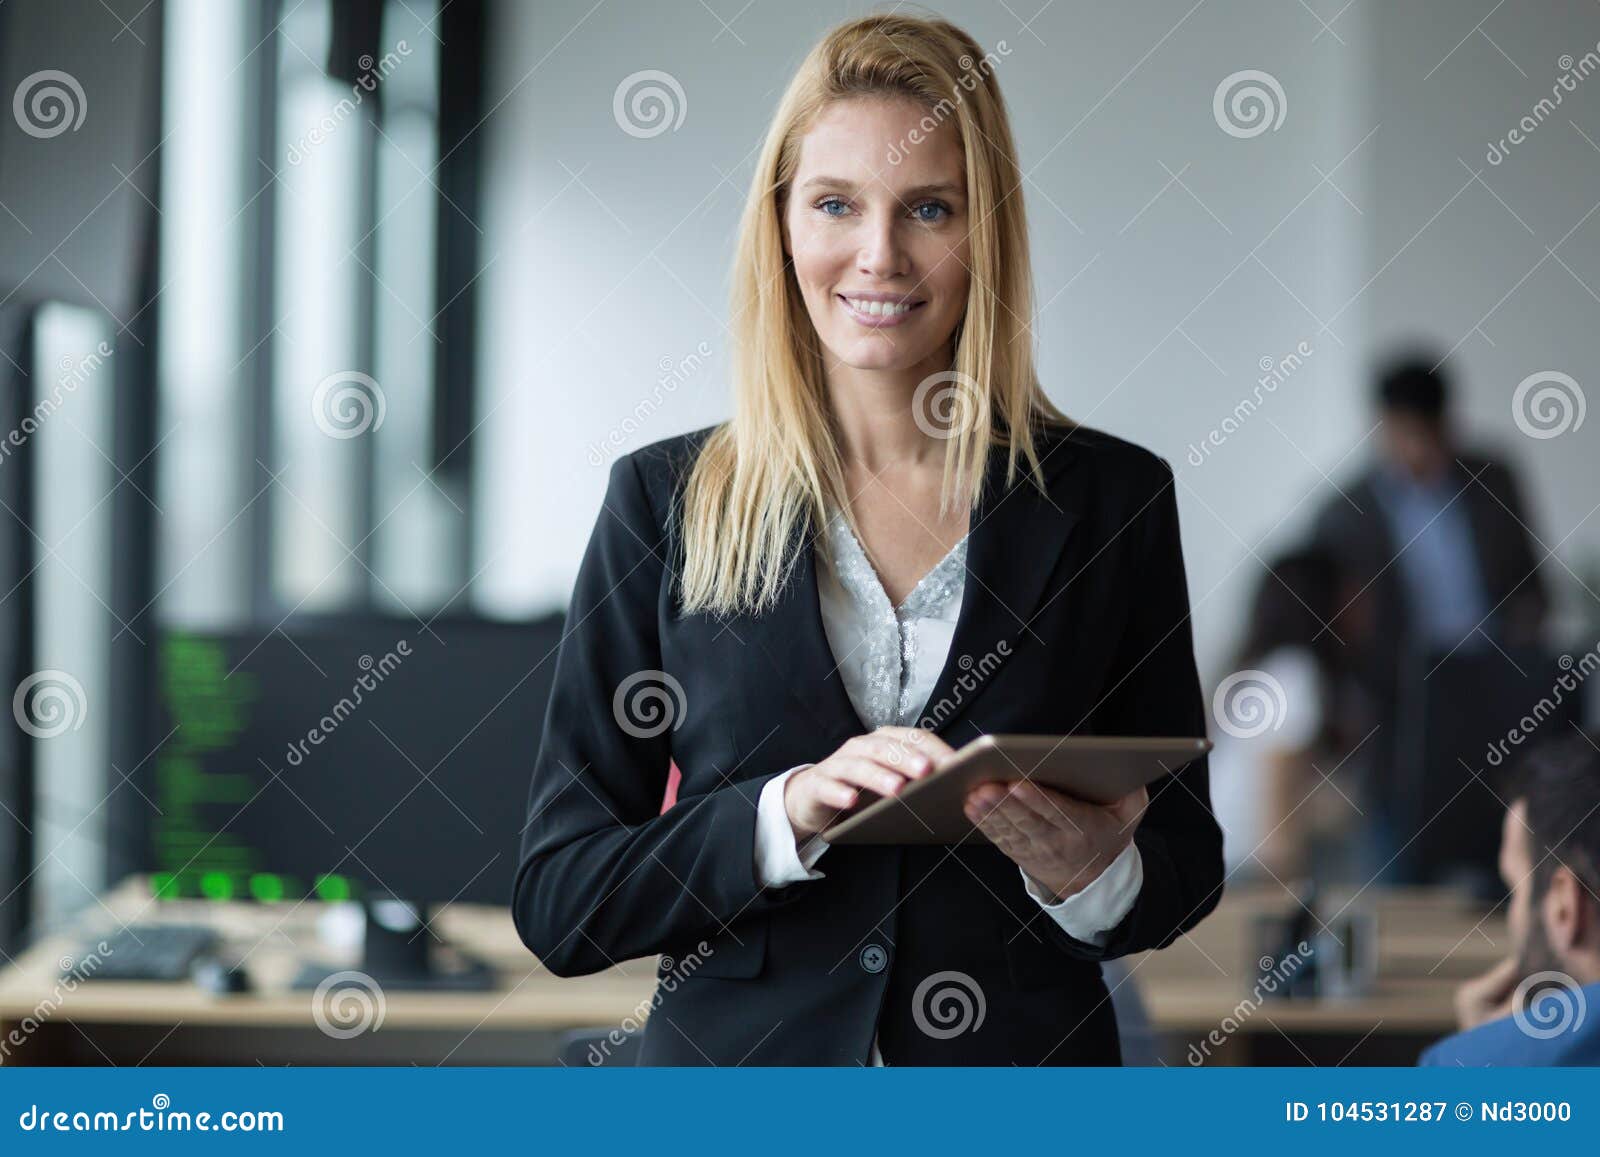 Carrera De La Empresaria En La Oficina De La Tecnología De La Información  Imagen de archivo - Imagen de mujeres, tenencia: 104531287